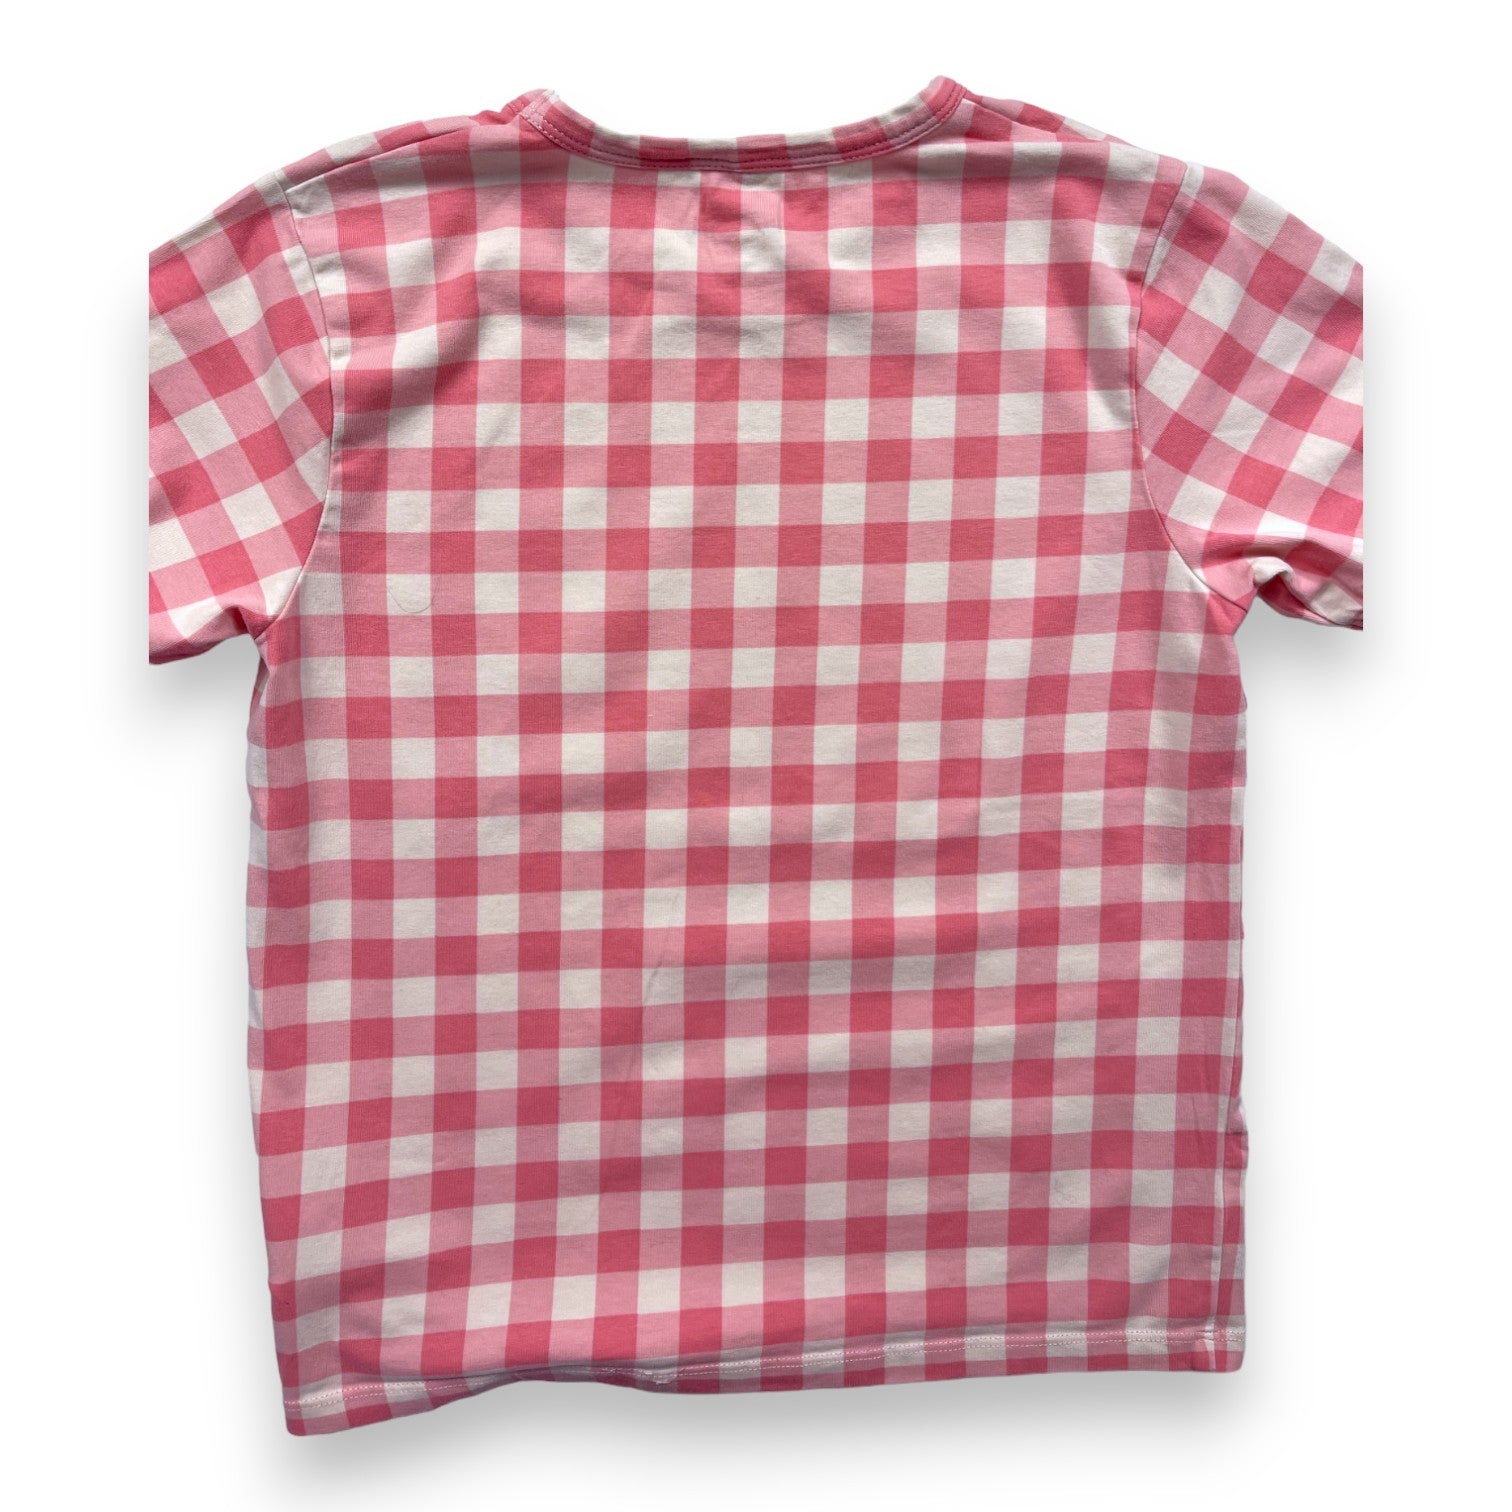 MINI RODINI - T shirt vichy rose - 6/7 ans